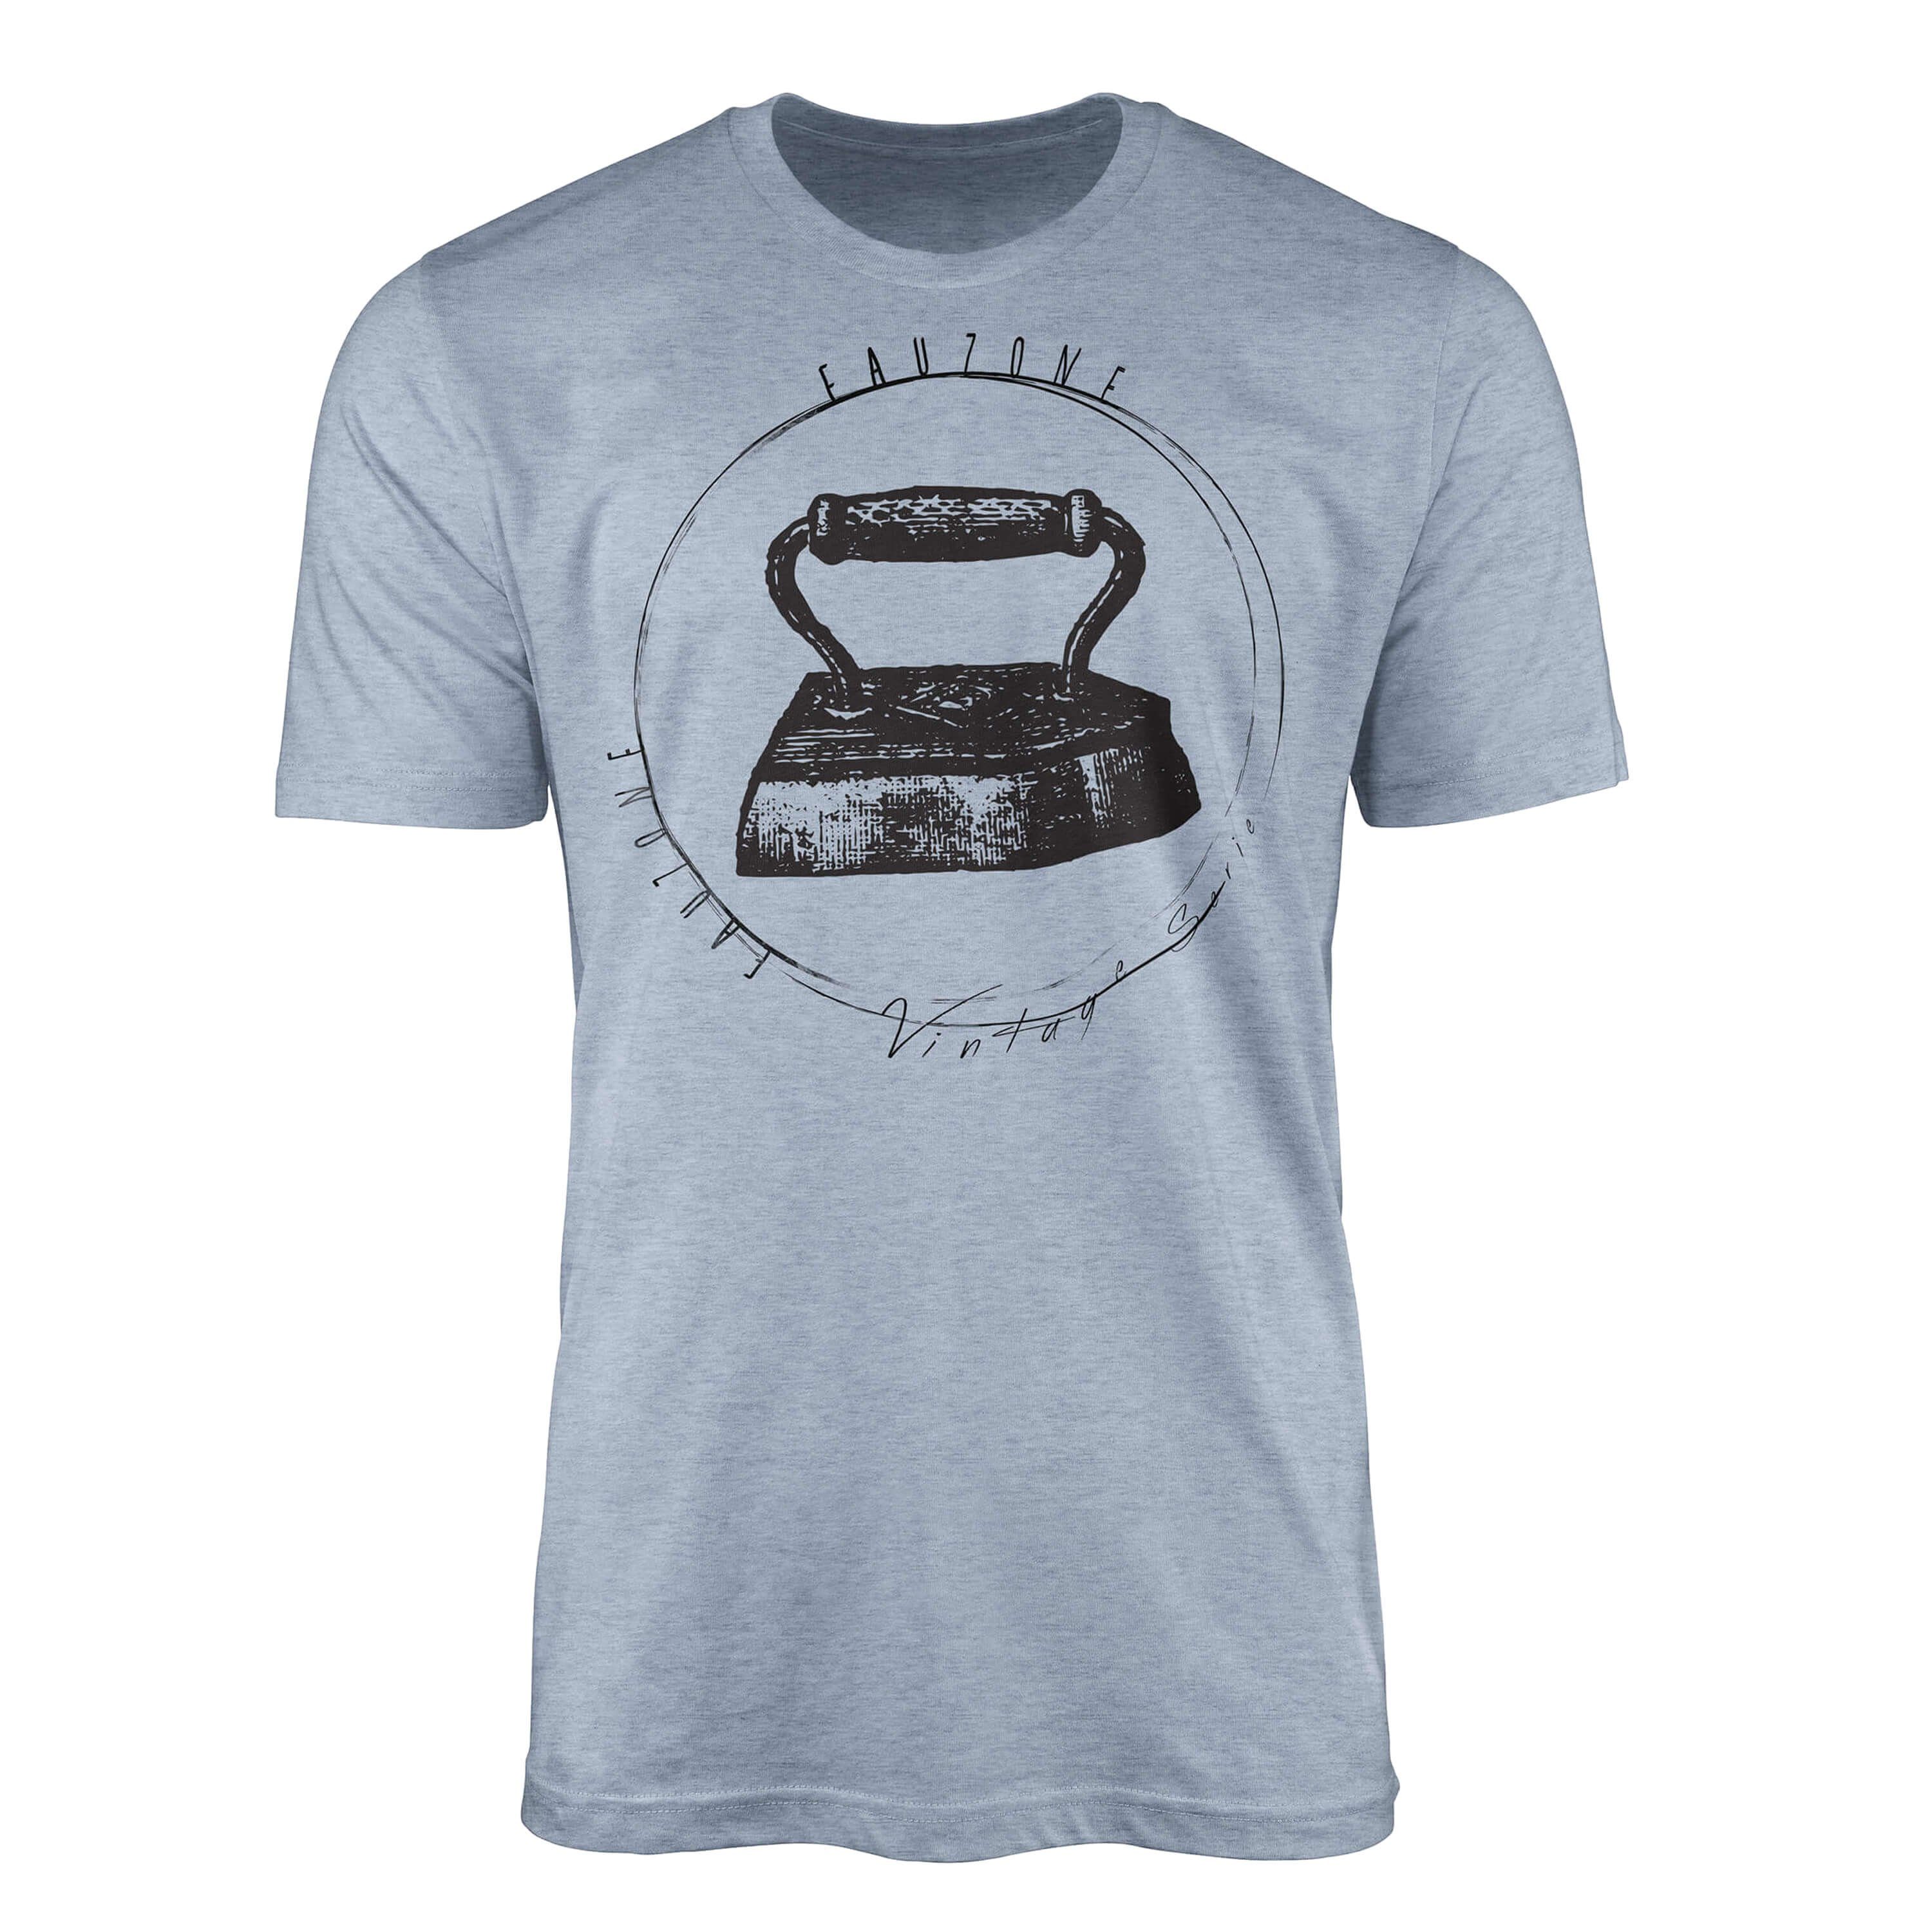 Sinus Art T-Shirt Vintage Herren T-Shirt Bügeleisen Stonewash Denim